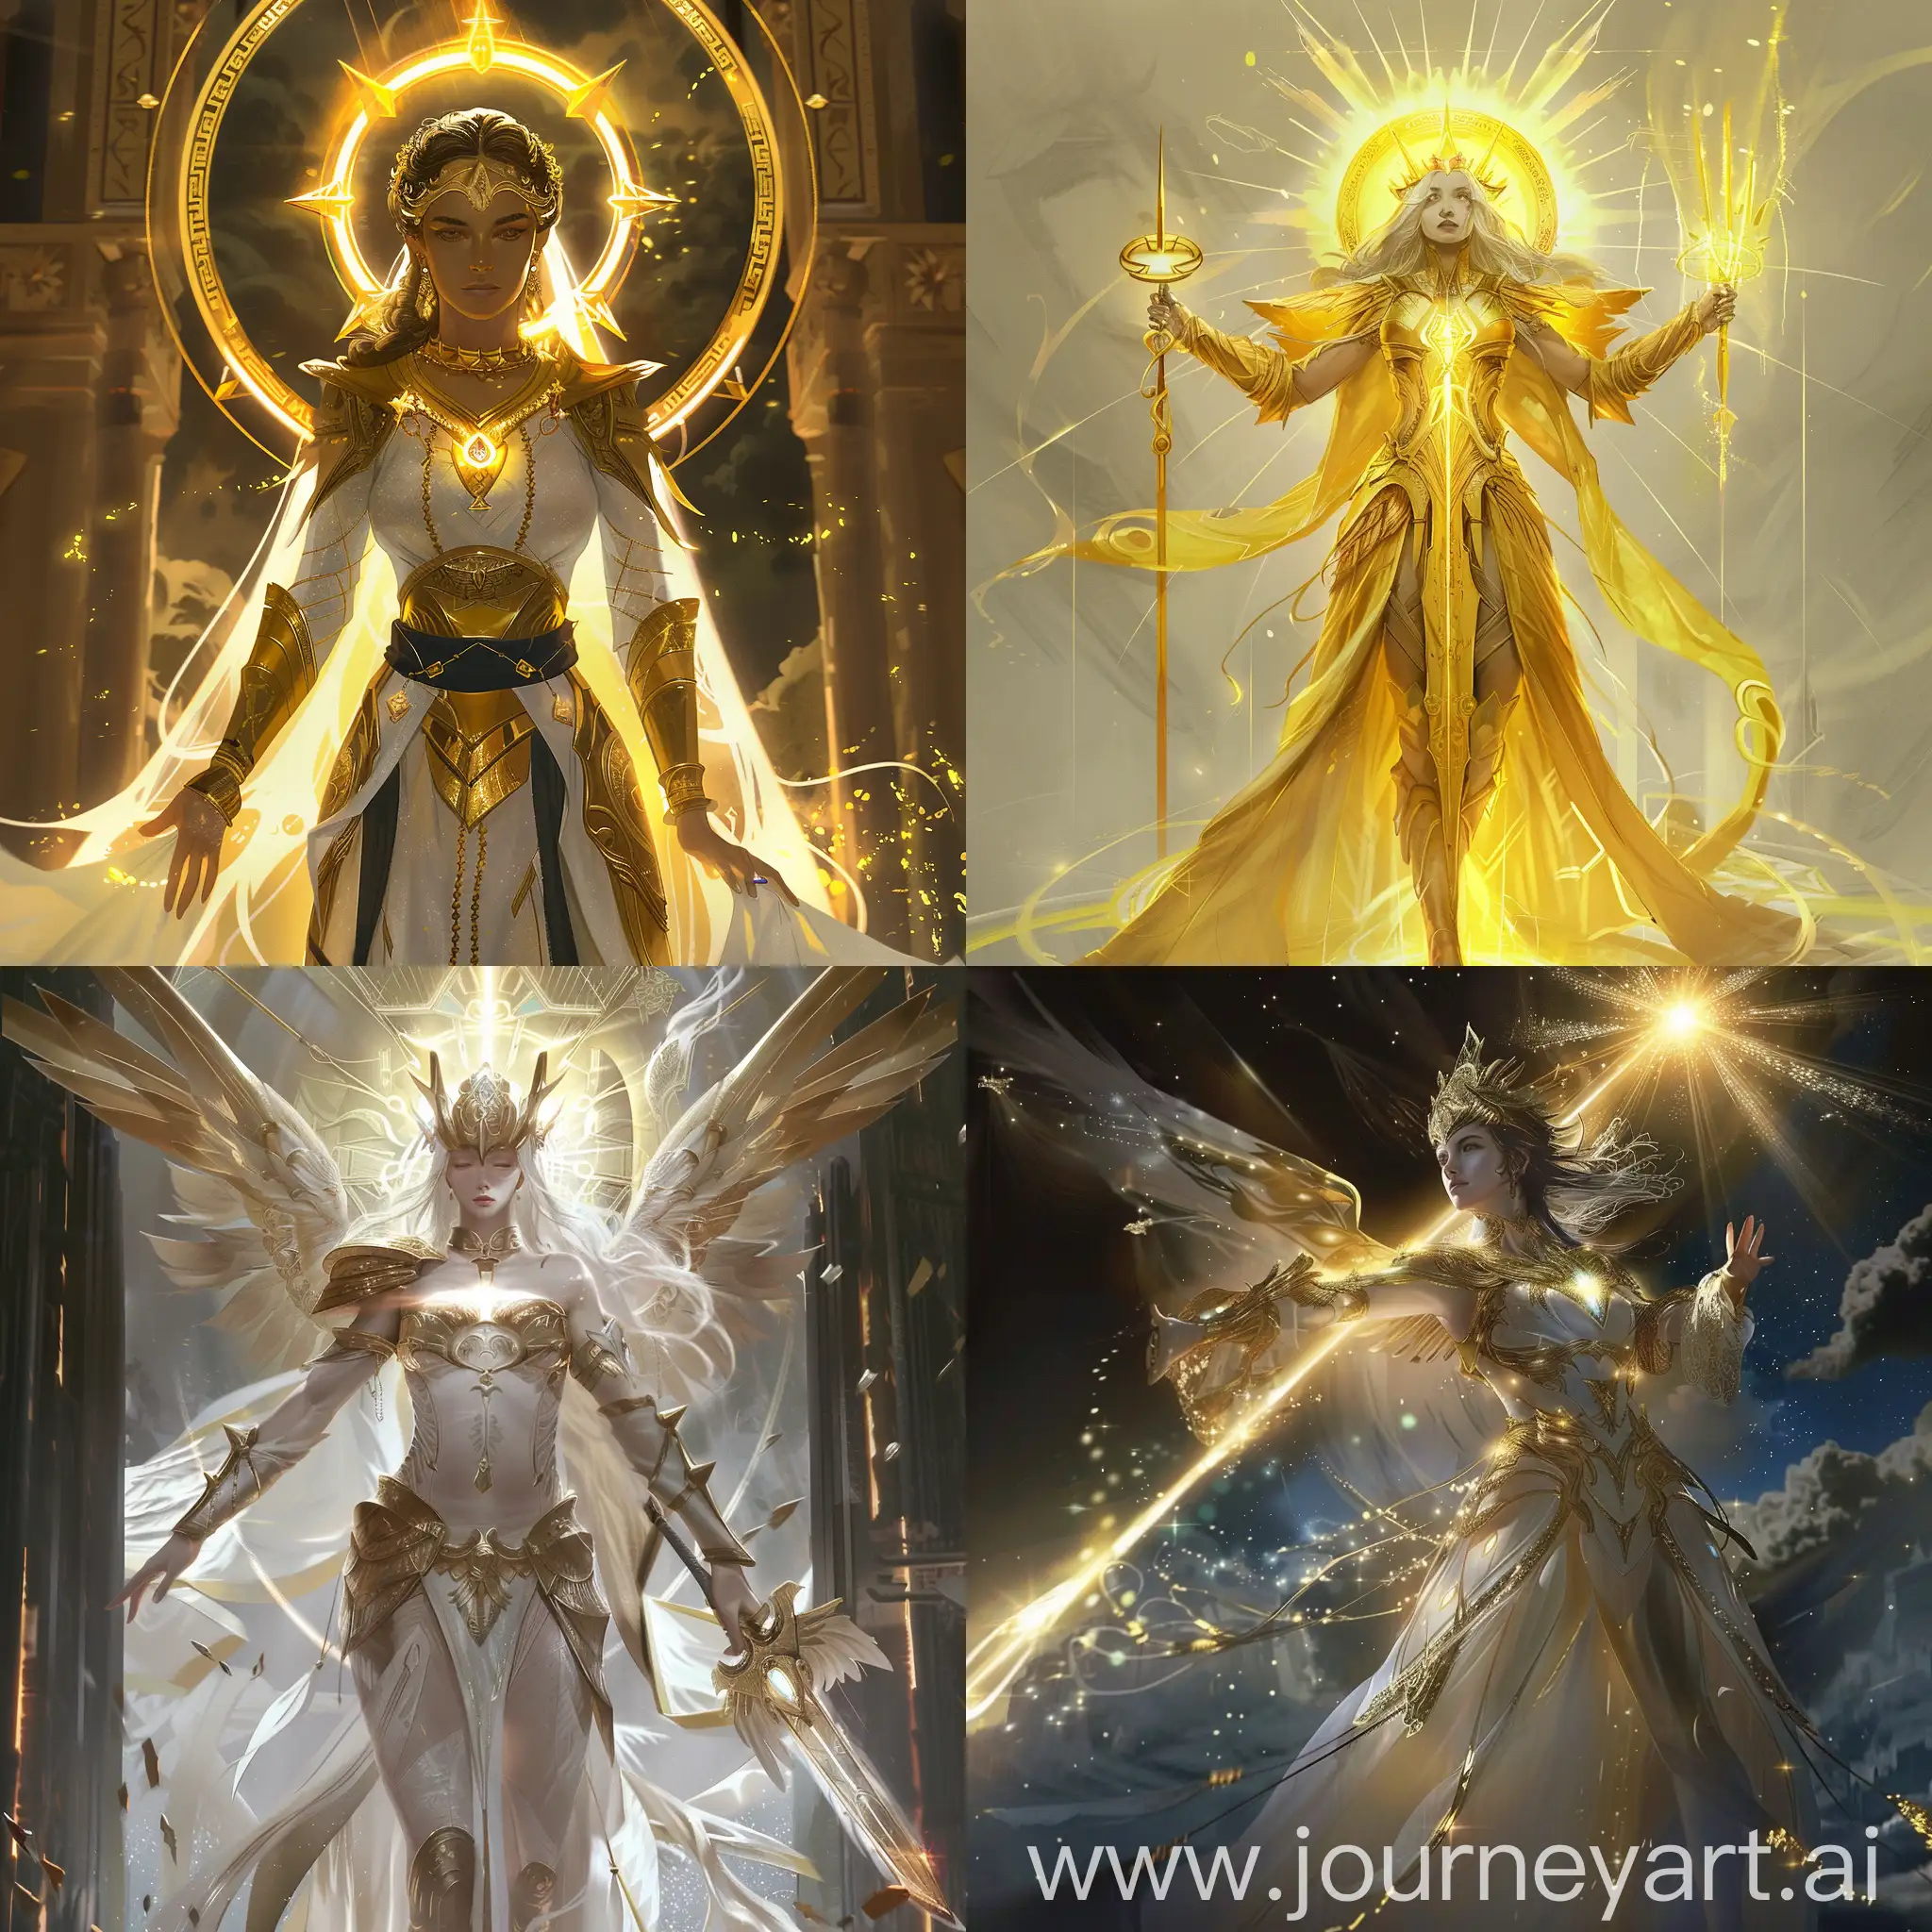 Divine-Concept-Art-Goddess-of-Light-Radiating-Brilliance